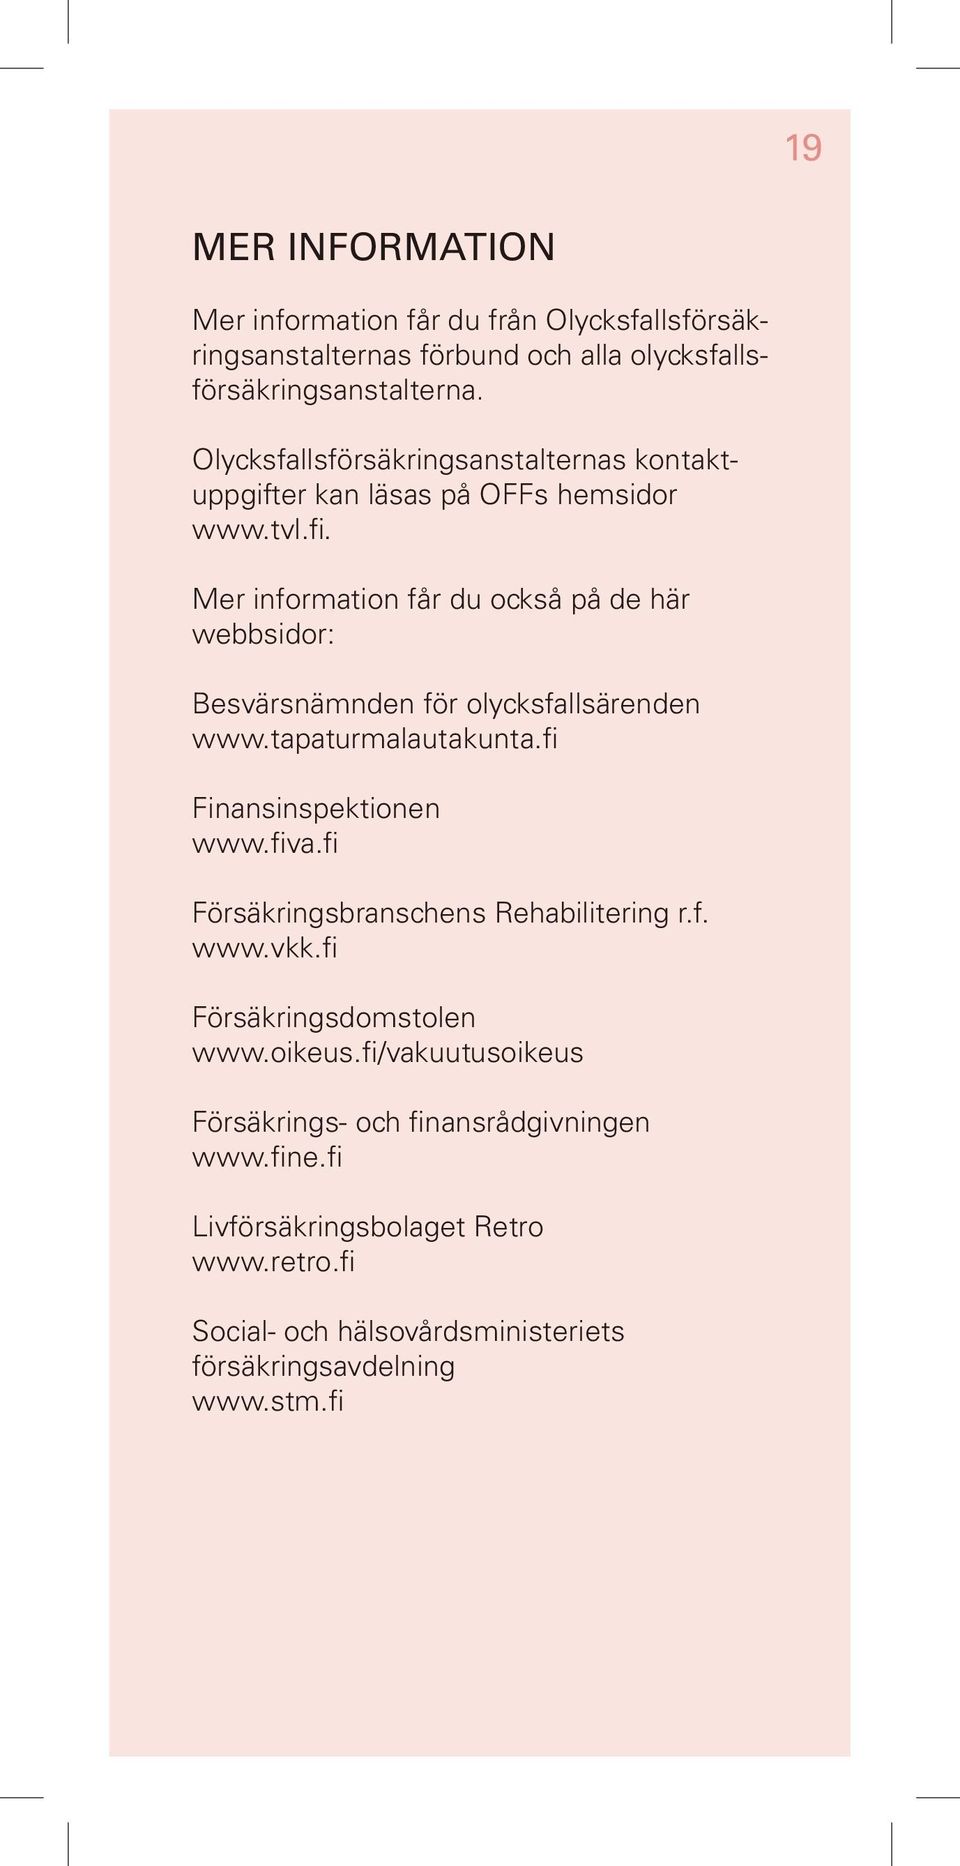 Mer information får du också på de här webbsidor: Besvärsnämnden för olycksfallsärenden www.tapaturmalautakunta.fi Finansinspektionen www.fiva.